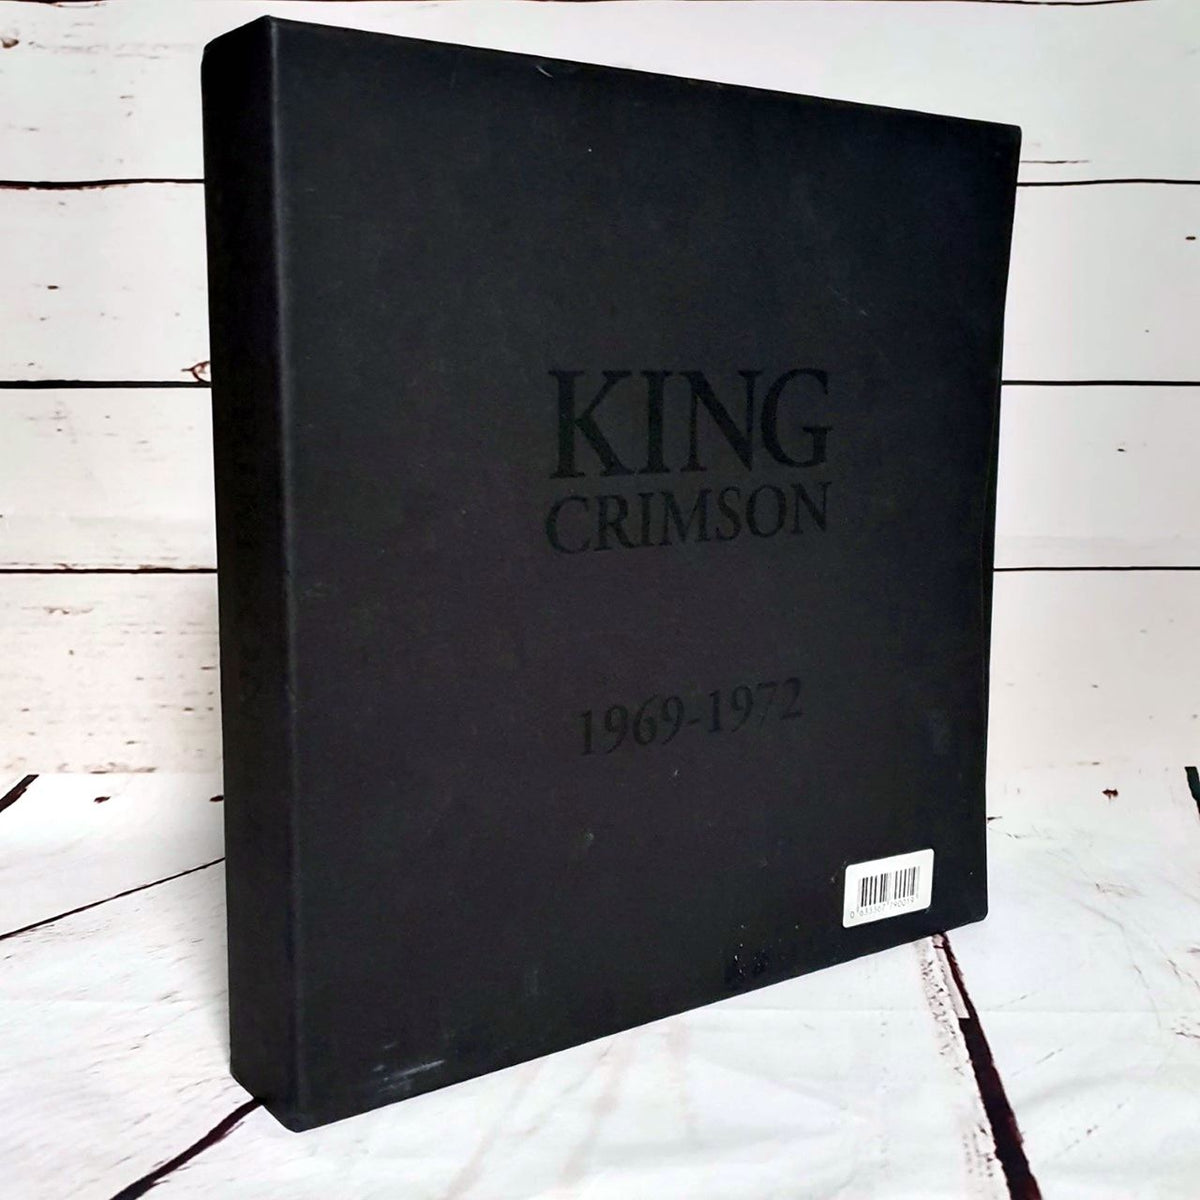 【新品未開封】KING CRIMSON 1969-1972 LPBOXアナログ